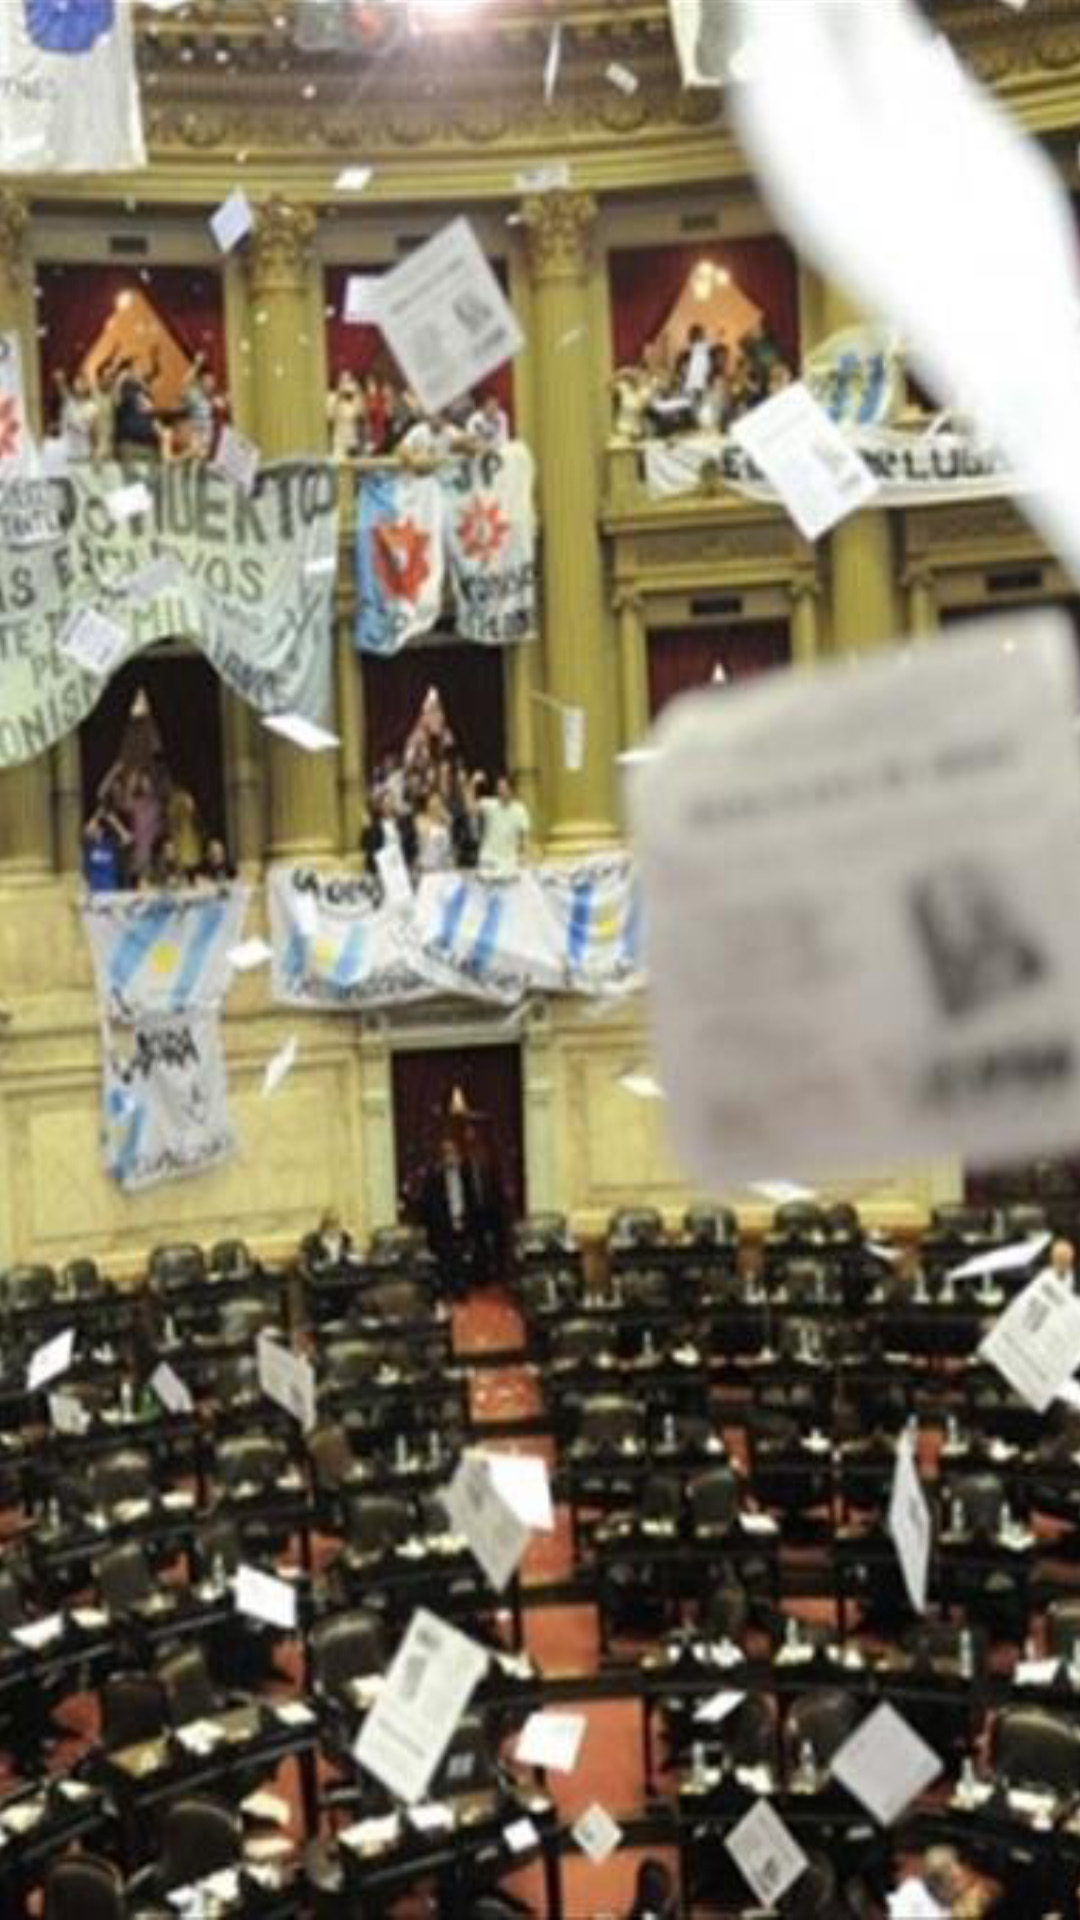 Aprobación de la Ley Voto Jóven en Diputados, el recinto está mitad vacío. En los balcones los militantes festejan, vuelan papeles de color blanco con inscripciones en negro. En los balcones se despliegan banderas.